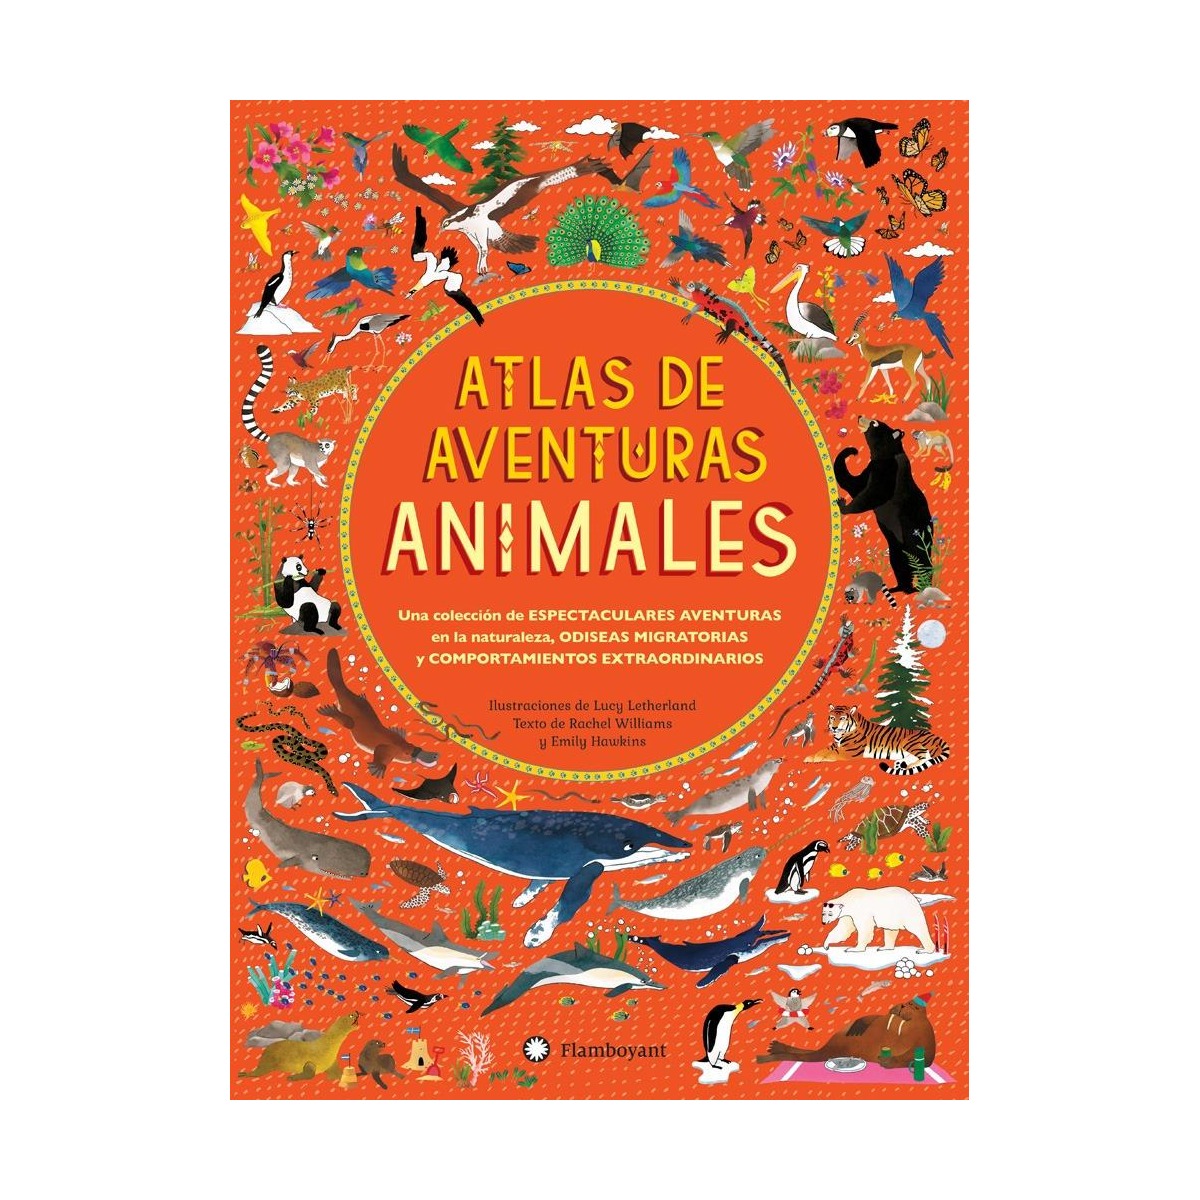 Atlas de aventuras Animales de Flamboyant